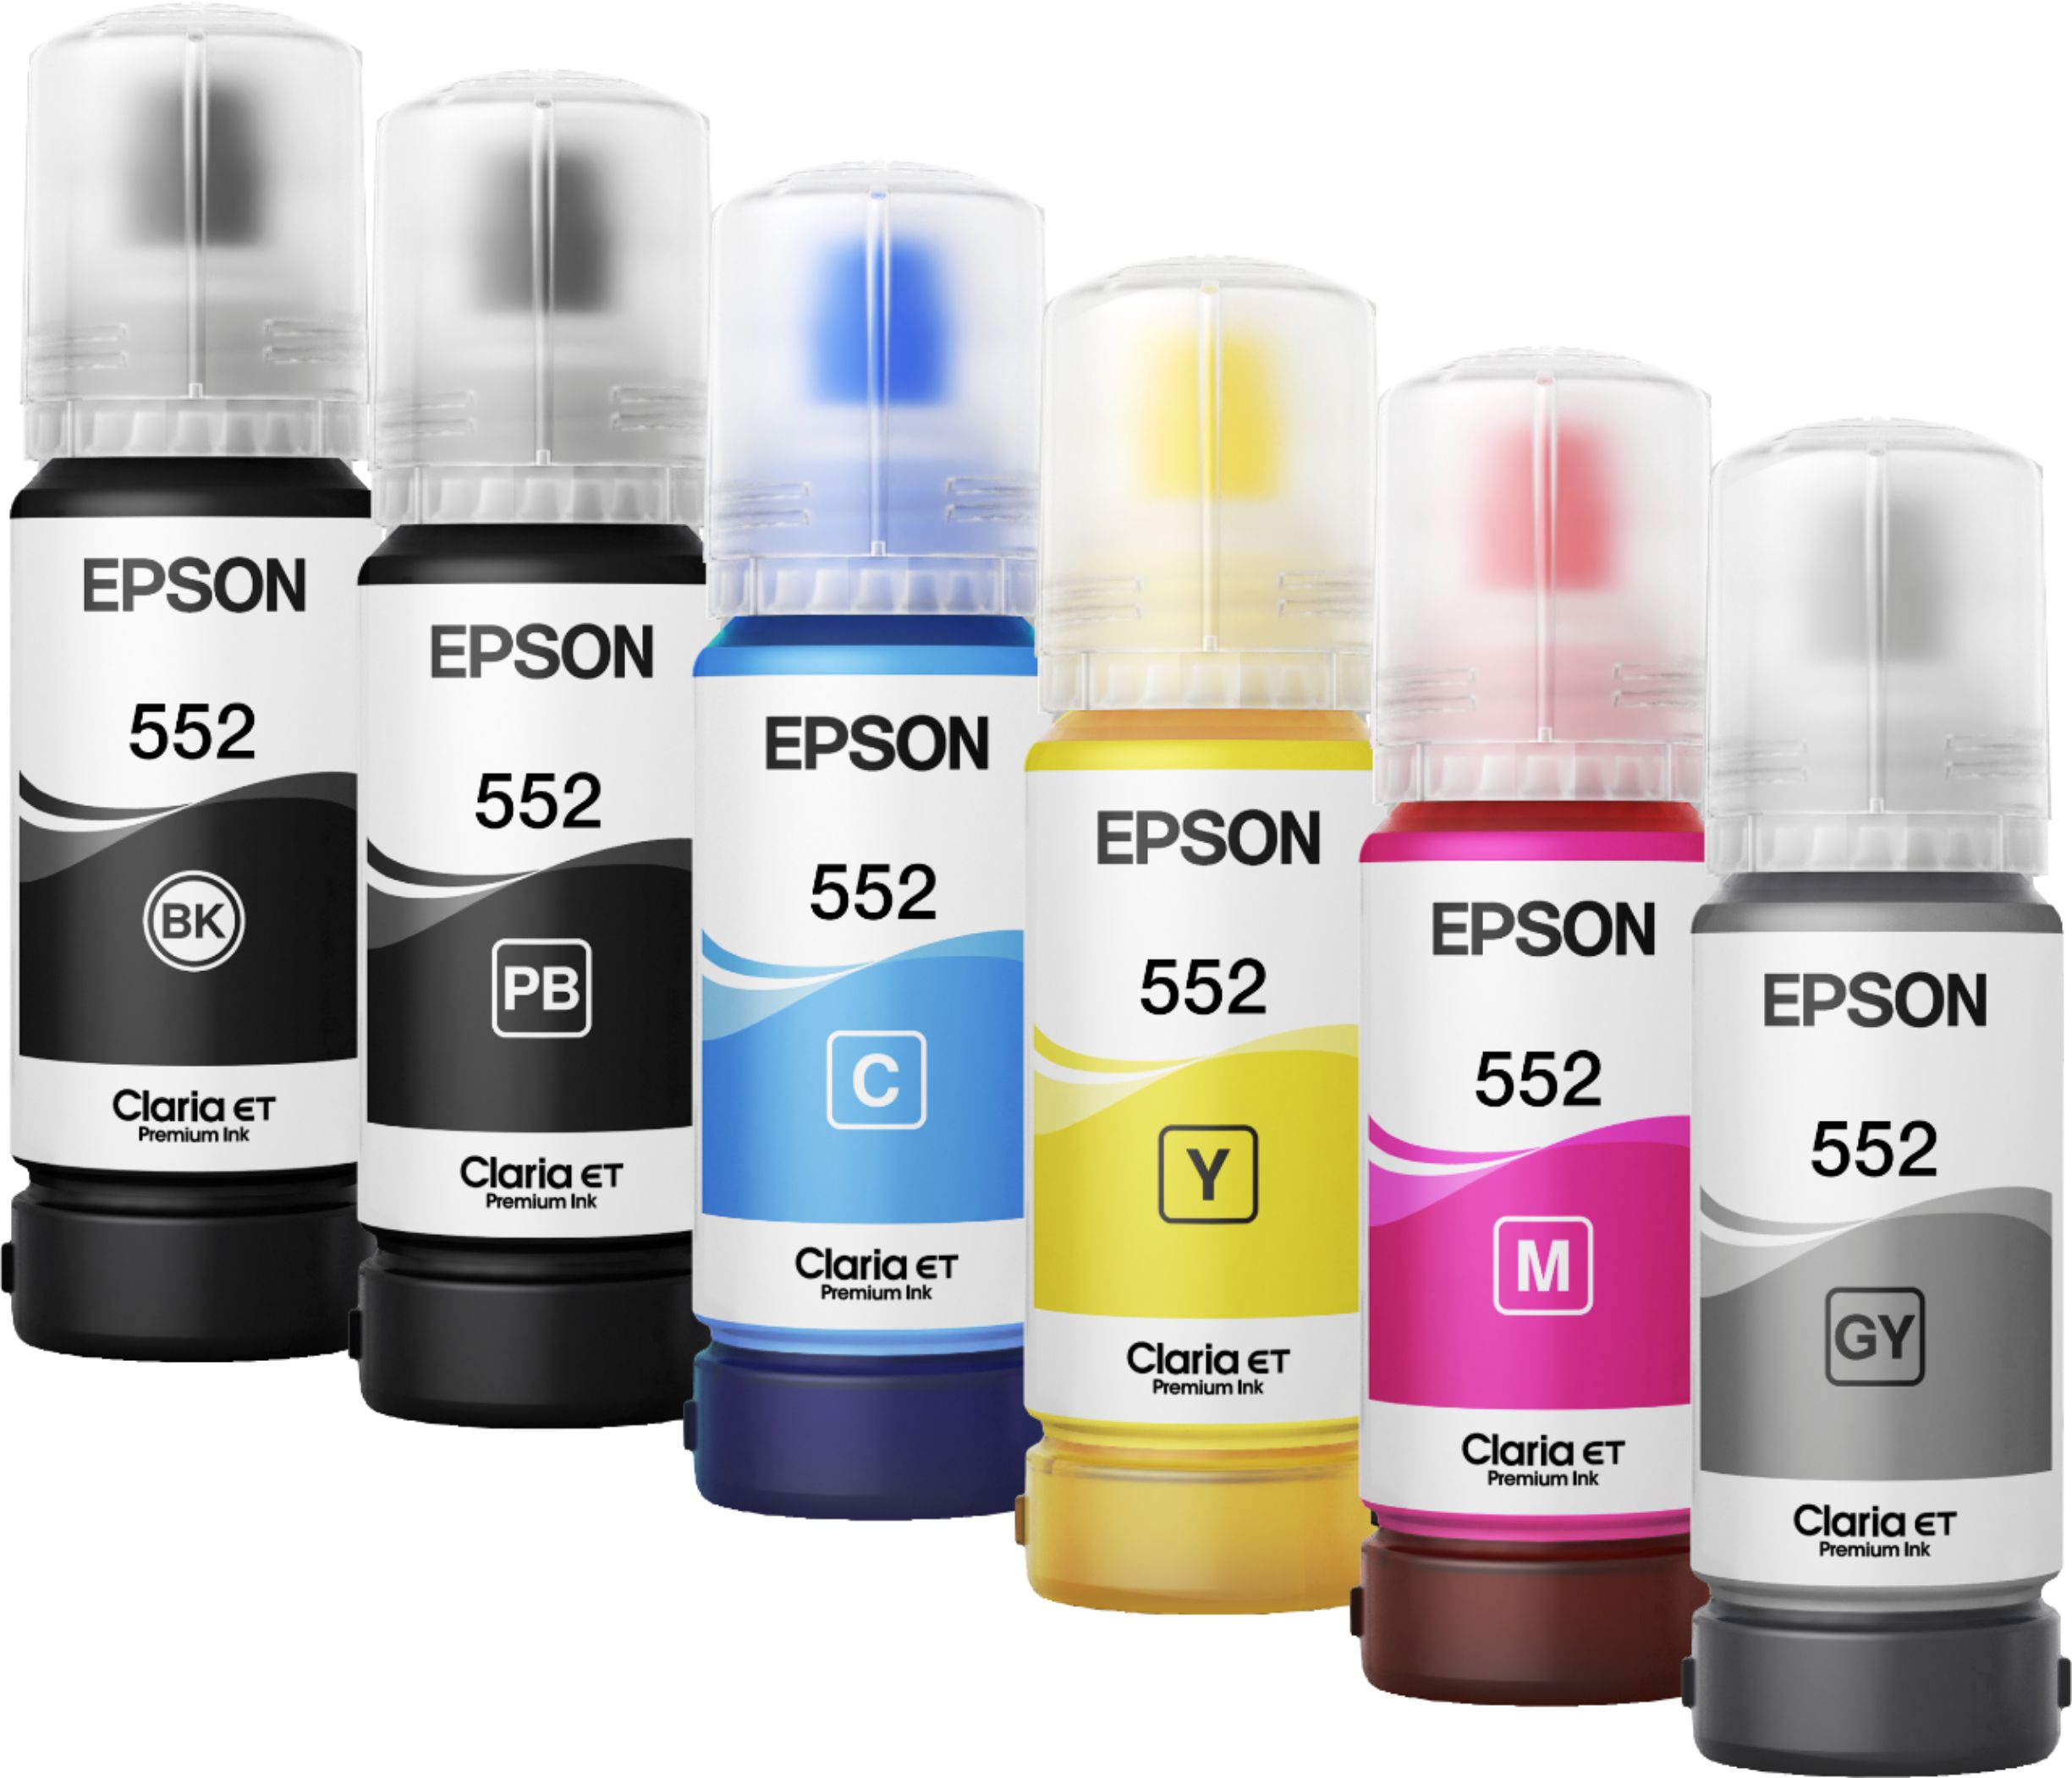 Epson EcoTank Photo ET-8500 All-in-One Printer - White 10343952485